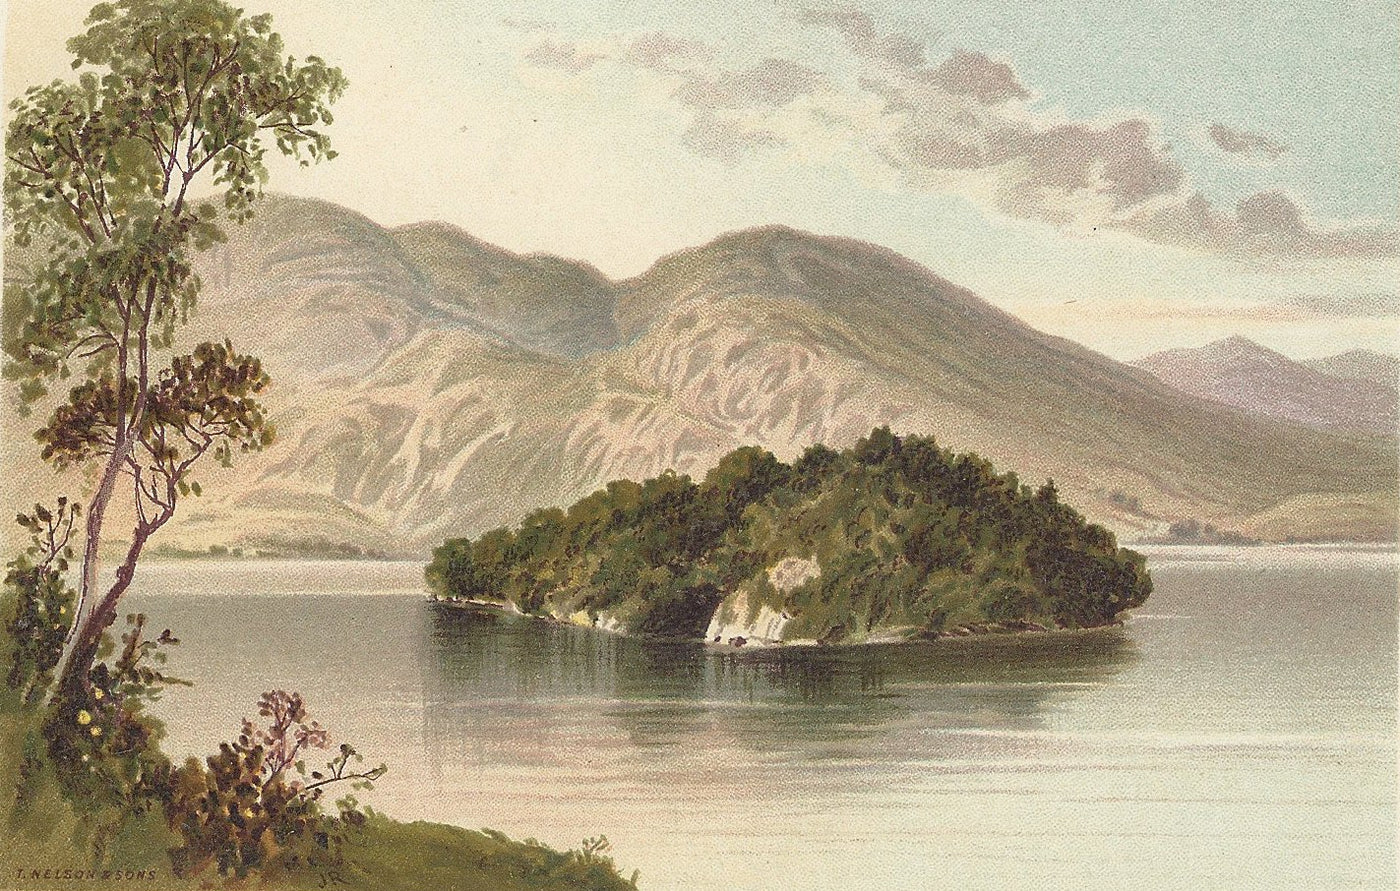 Loch Katrine Ellen's Isle Scotland antique print